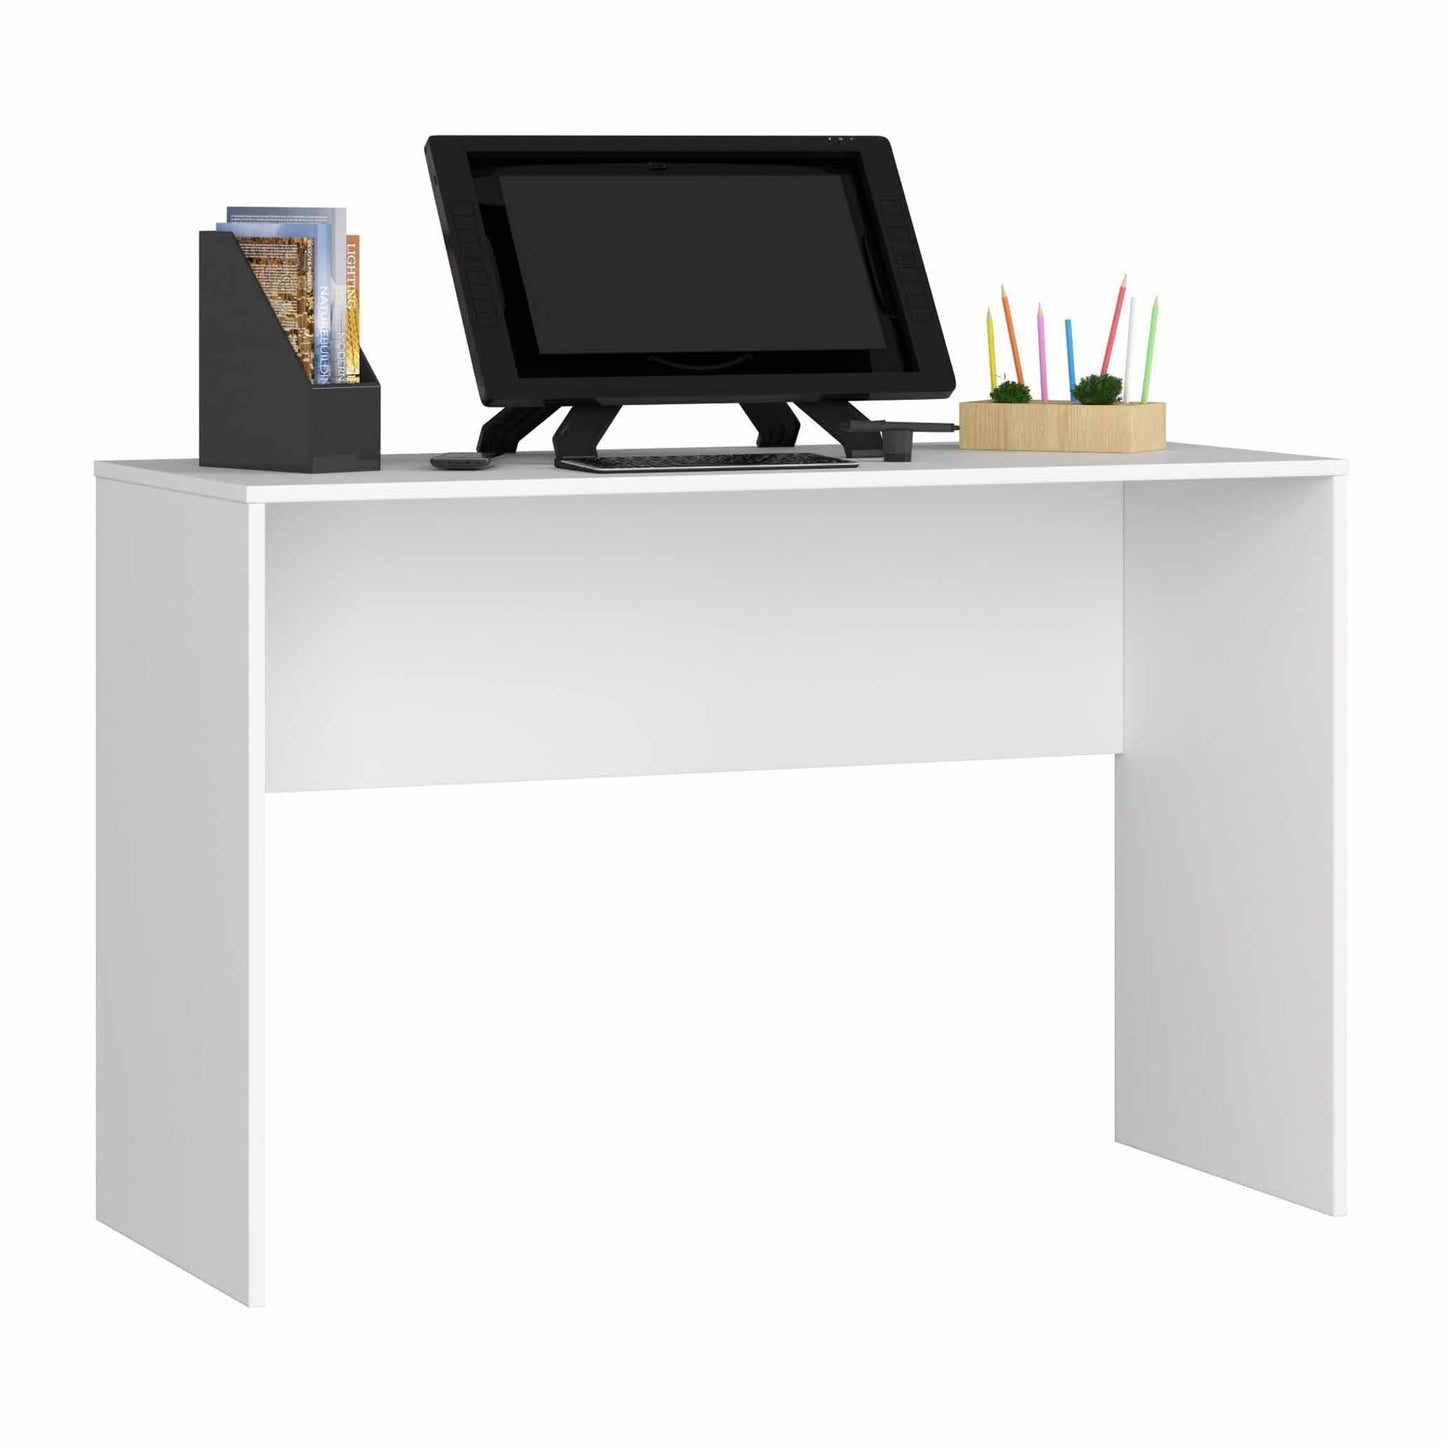 Desk 100 x 75 cm - FAN22